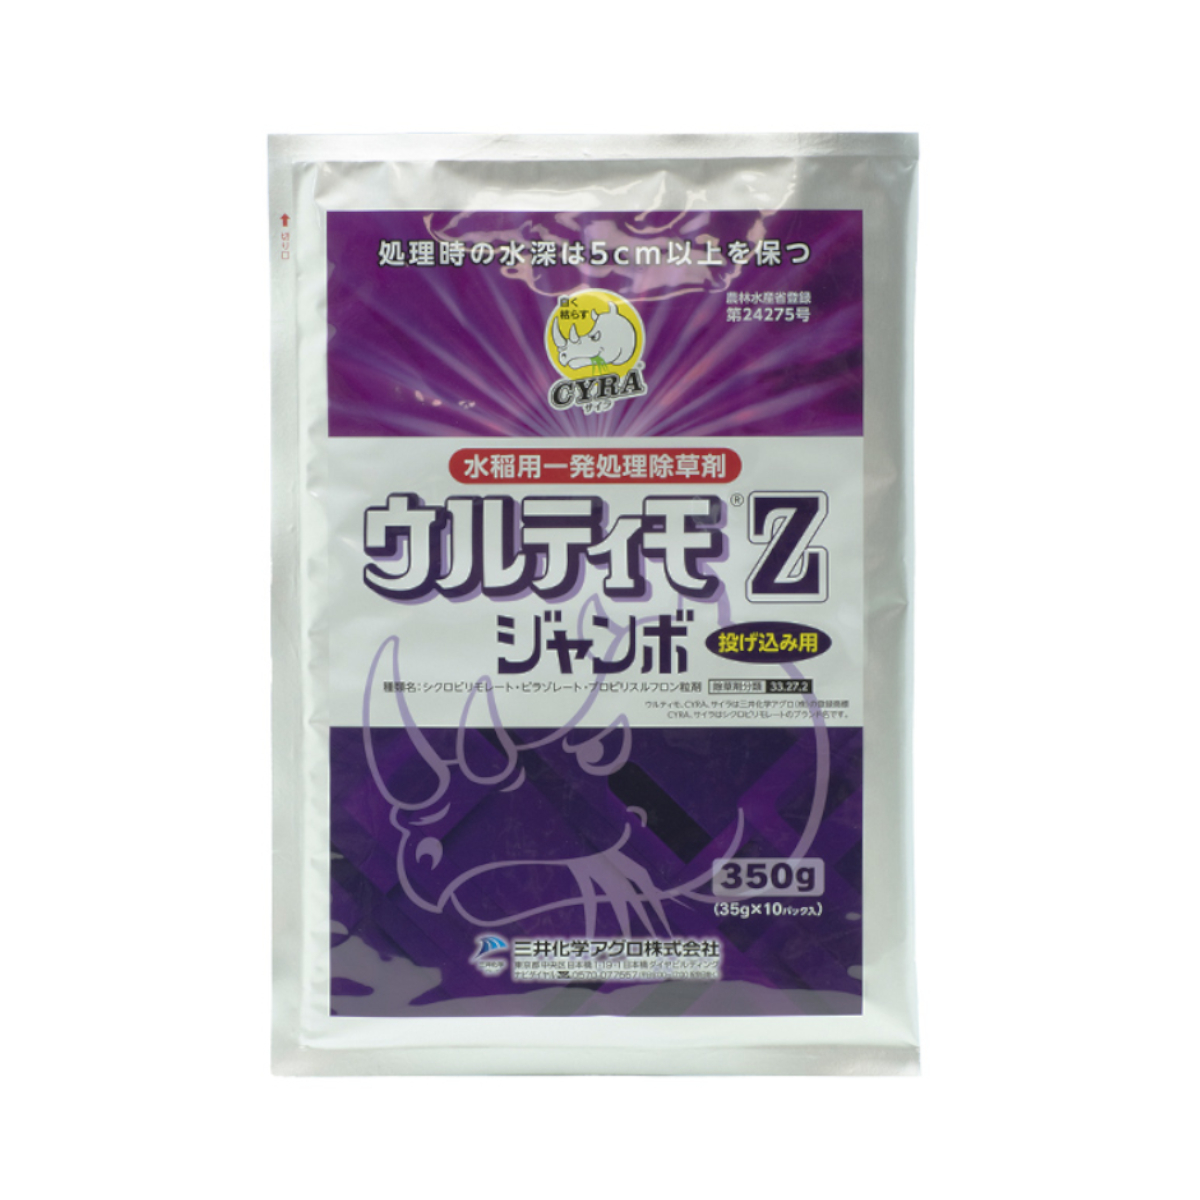 ウルティモZジャンボ 350g×12袋セット 園芸薬剤・植物活性剤